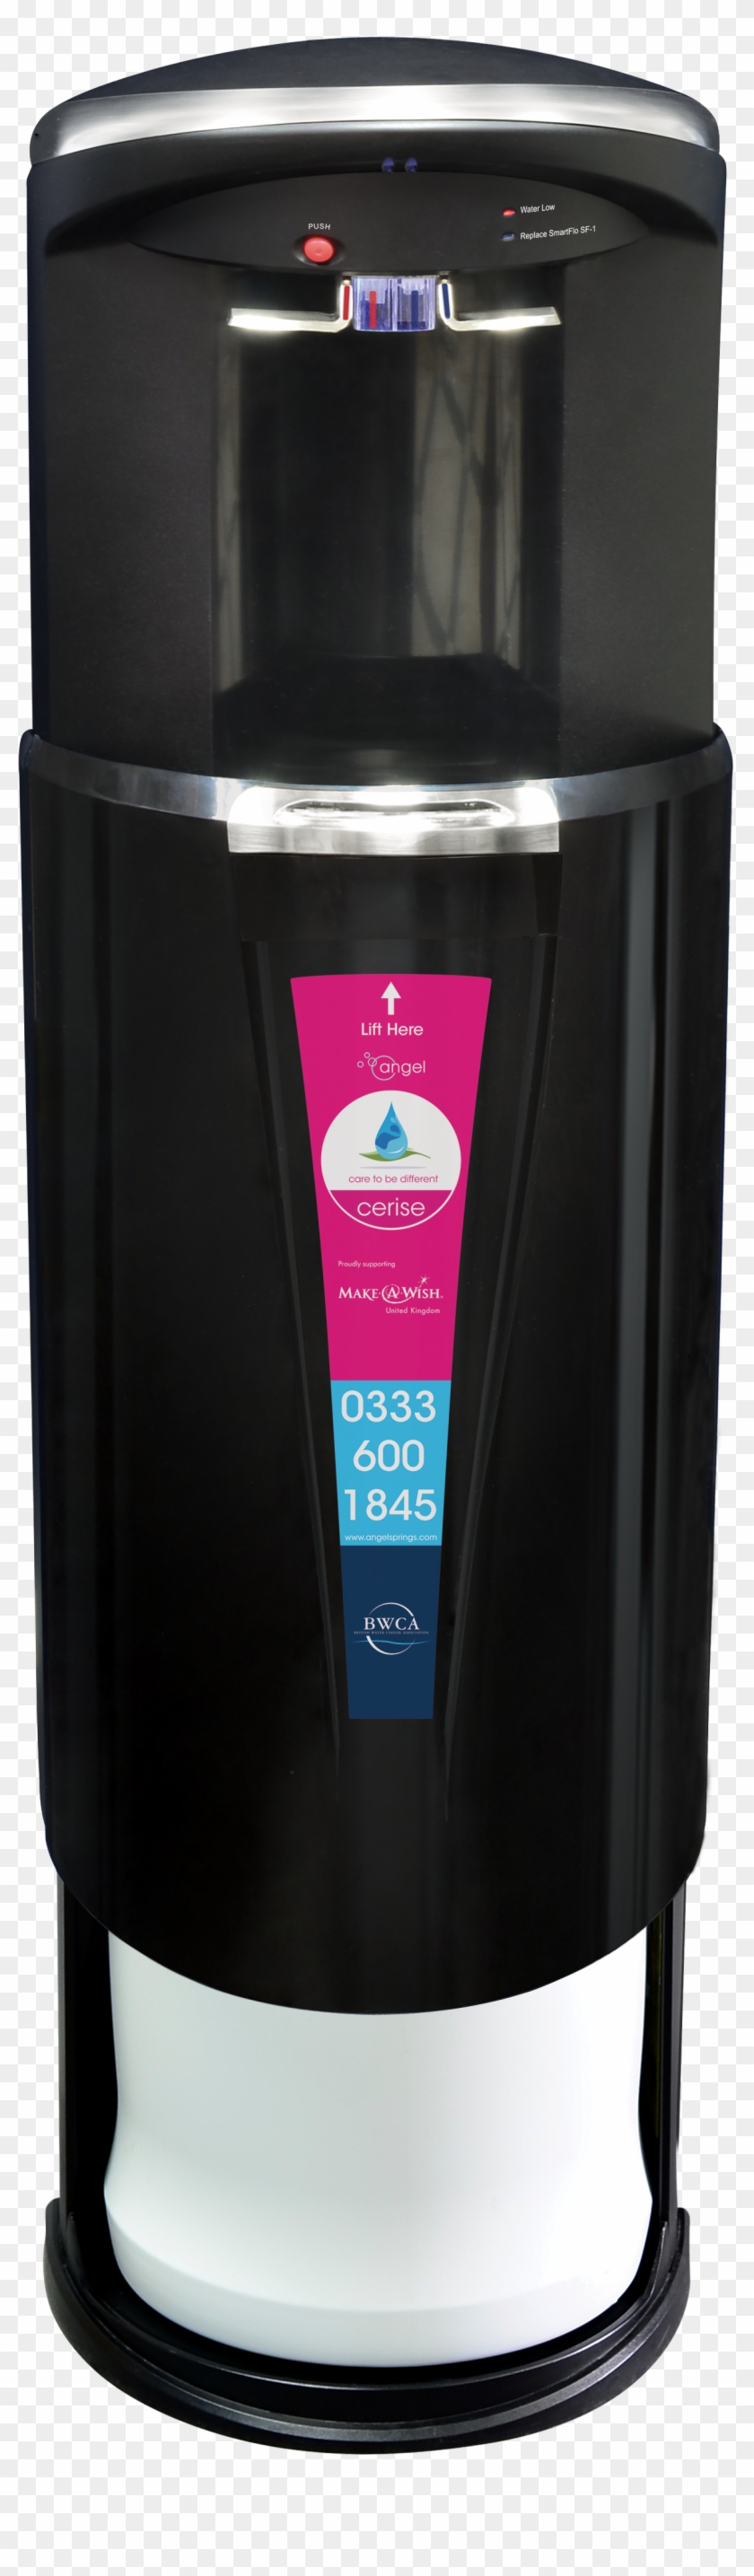 Cerise-bottom - Water Dispenser Clipart